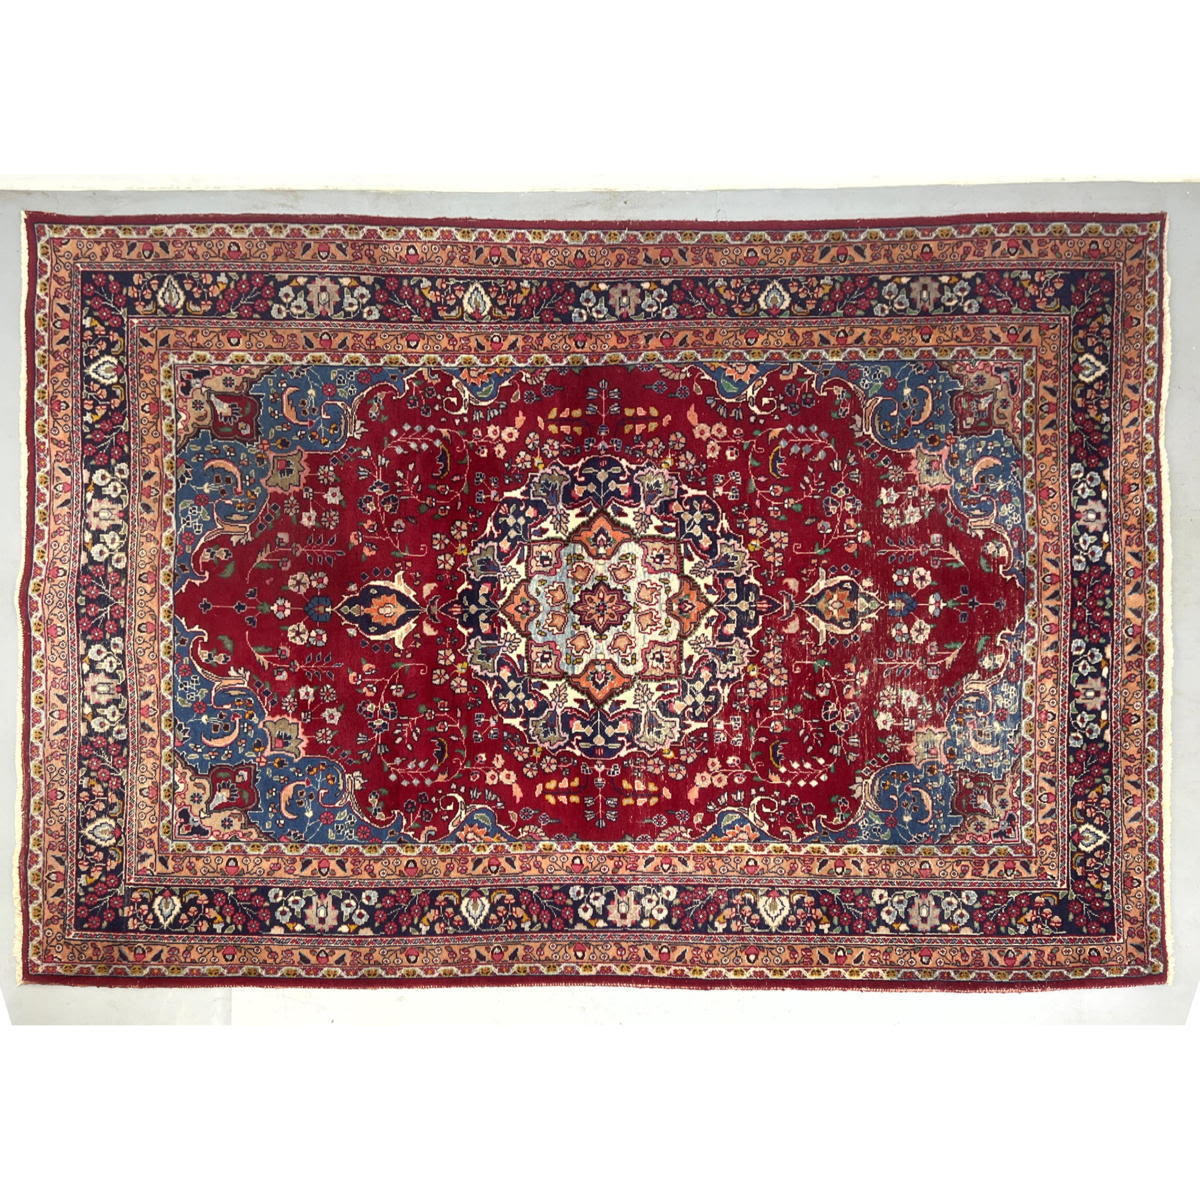 9 8 x 6 6 Persian Carpet Handmeade 2ff696